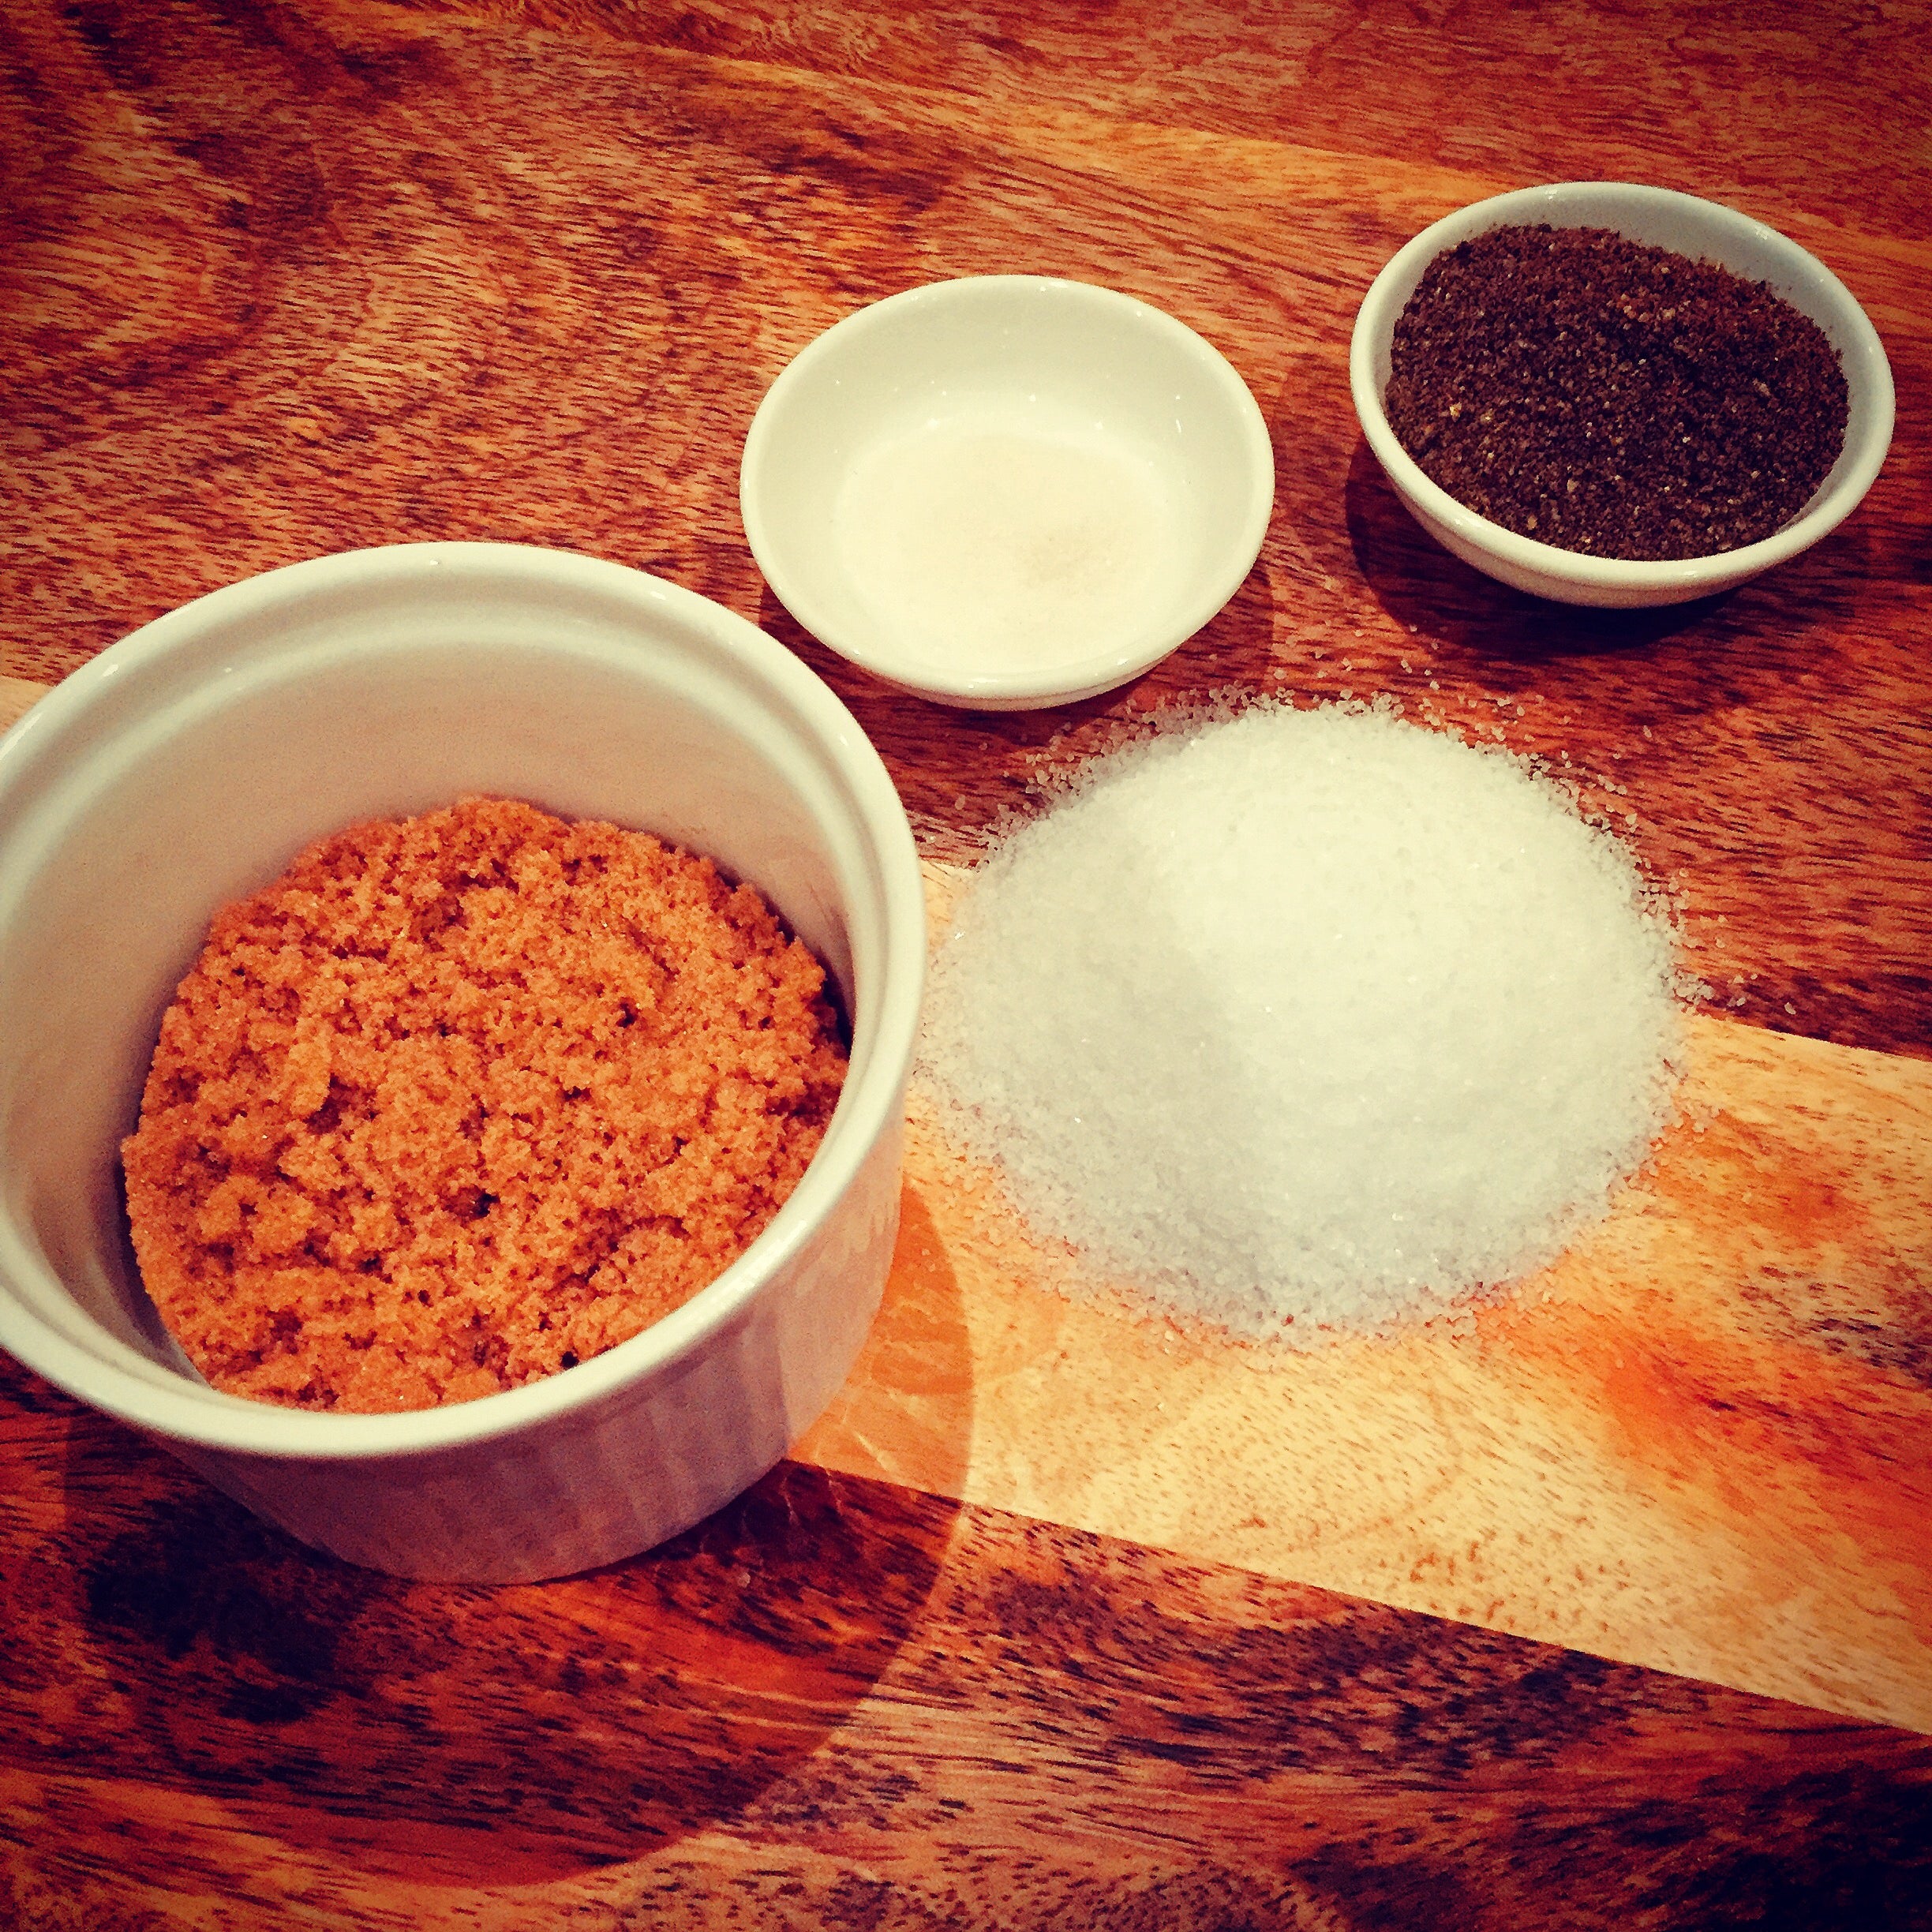 The key ingredients for curing bacon - salt, pepper, sugar, prague poweder